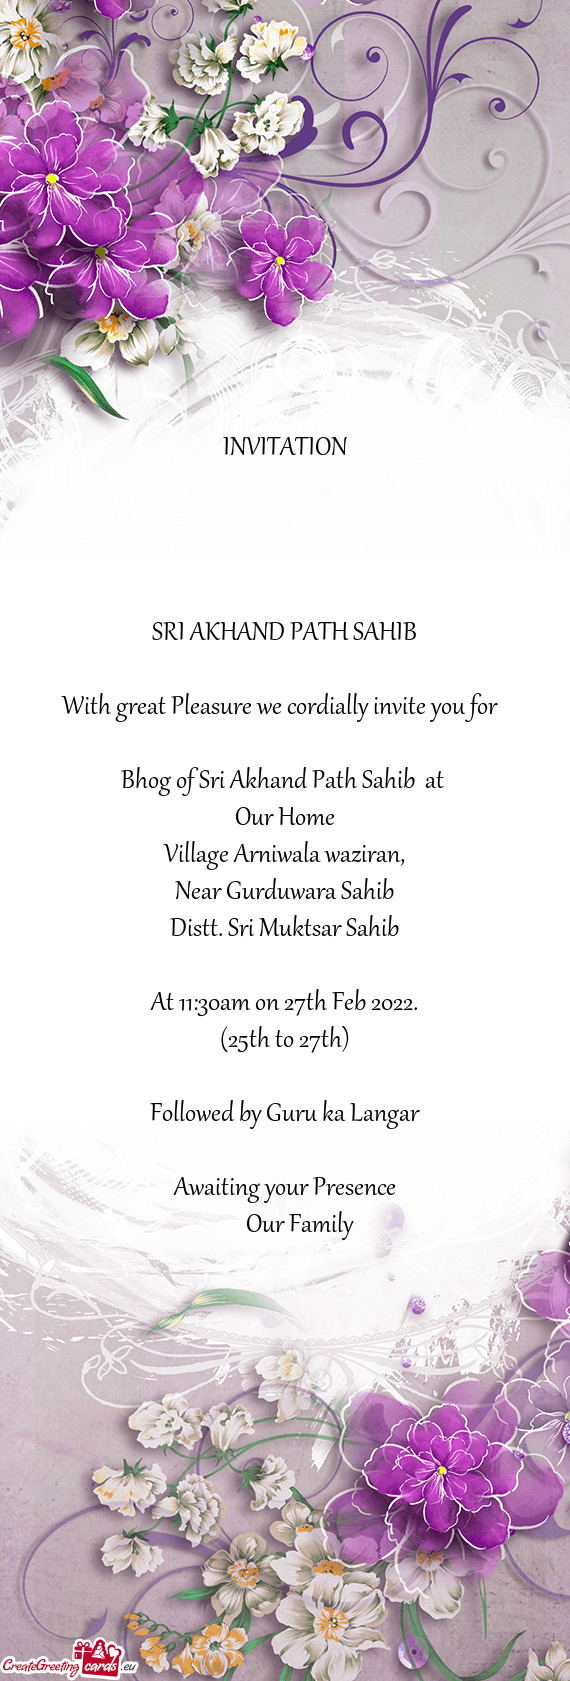 Bhog of Sri Akhand Path Sahib at